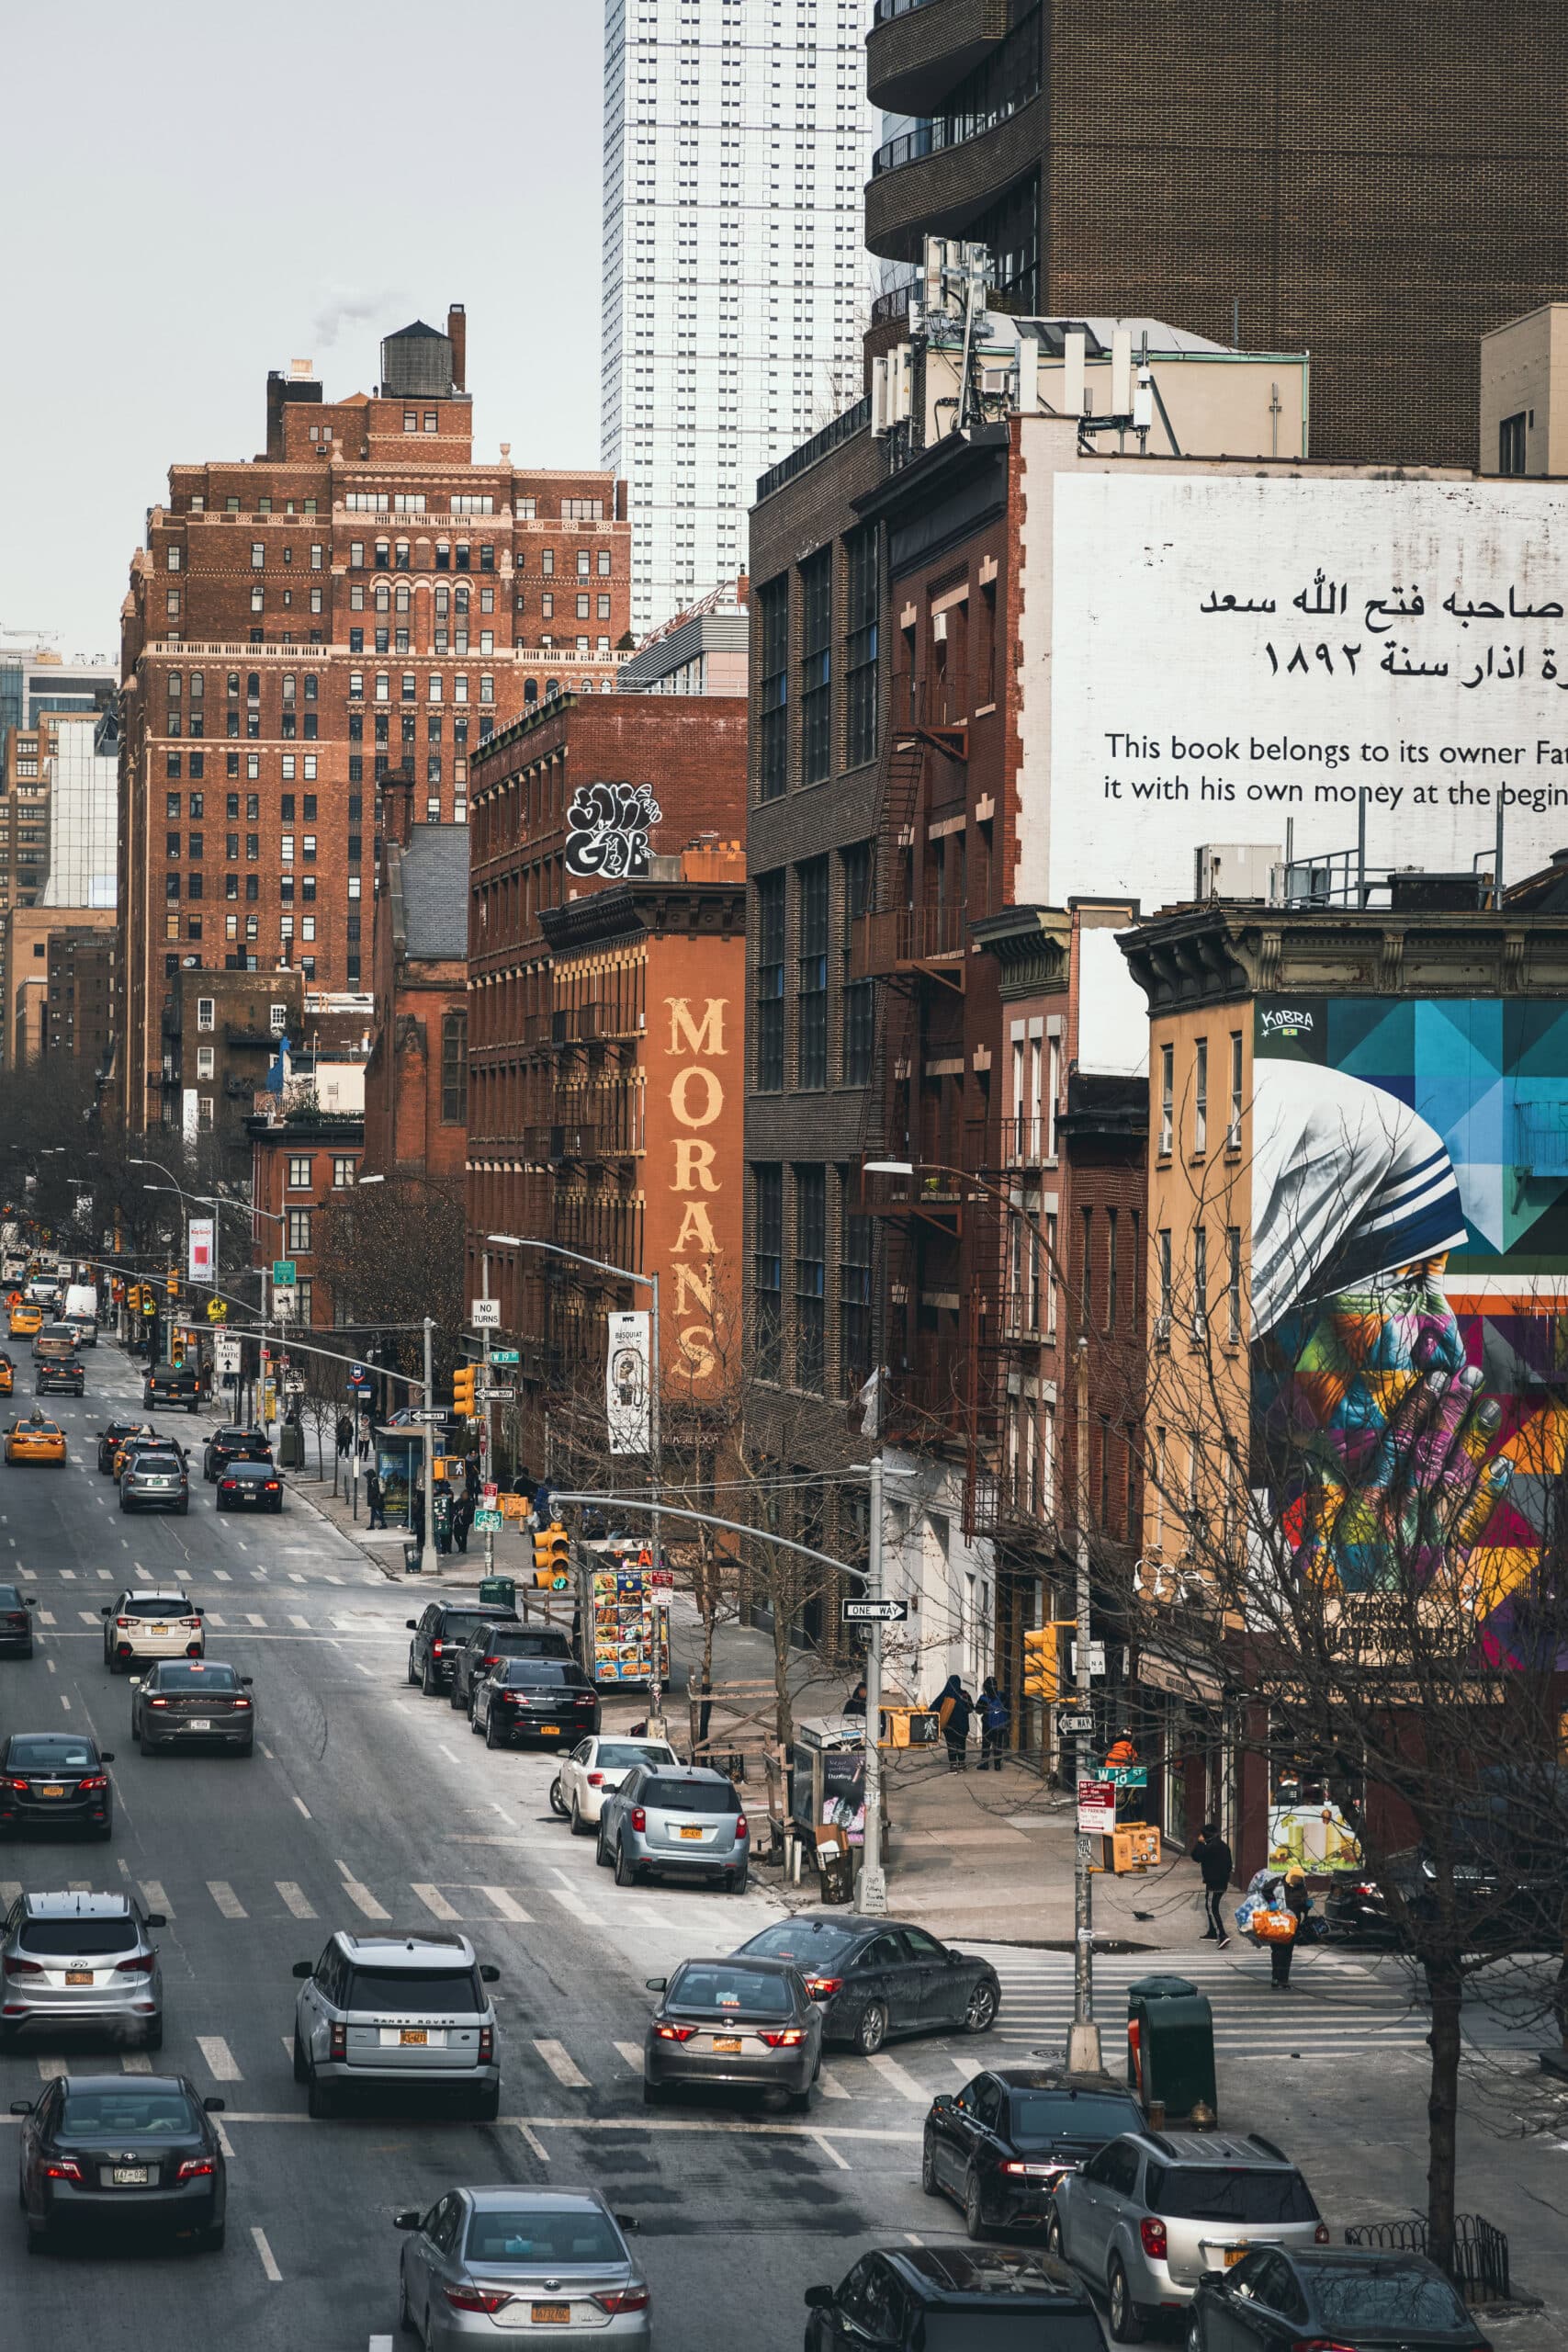 Städtische Straßenszene mit Autos und älteren Backsteingebäuden, darunter eines mit einem Schild für „Moran’s“, im Kontrast zu einem eleganten modernen Wolkenkratzer im Hintergrund. © Fotografie Tomas Rodriguez